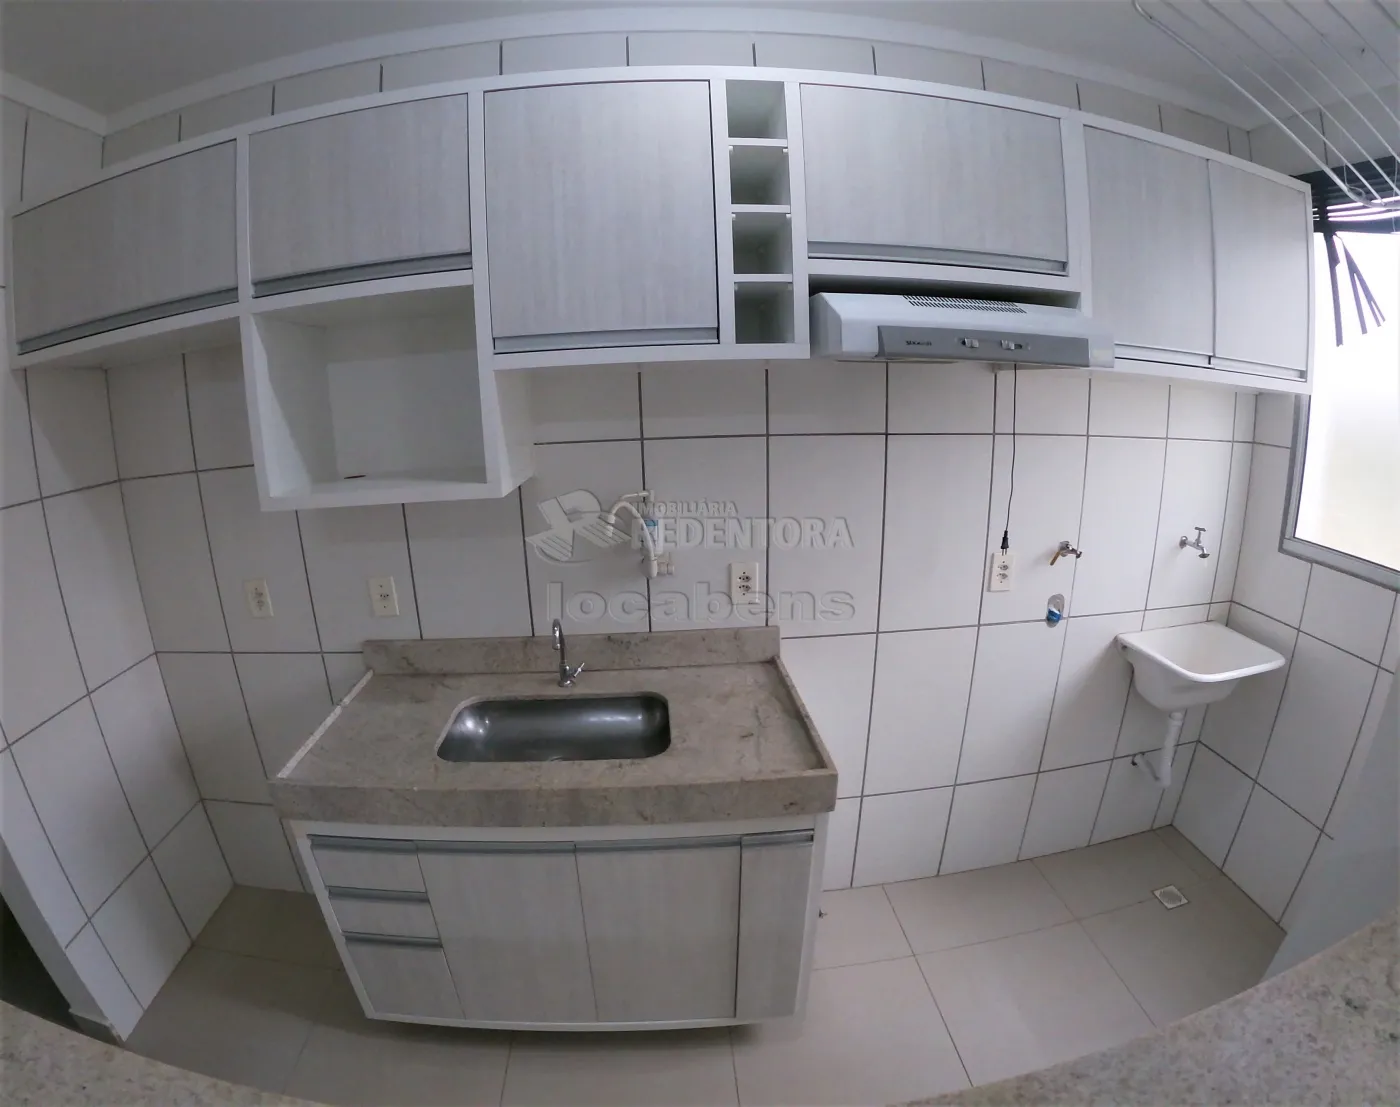 Alugar Apartamento / Padrão em São José do Rio Preto R$ 650,00 - Foto 4